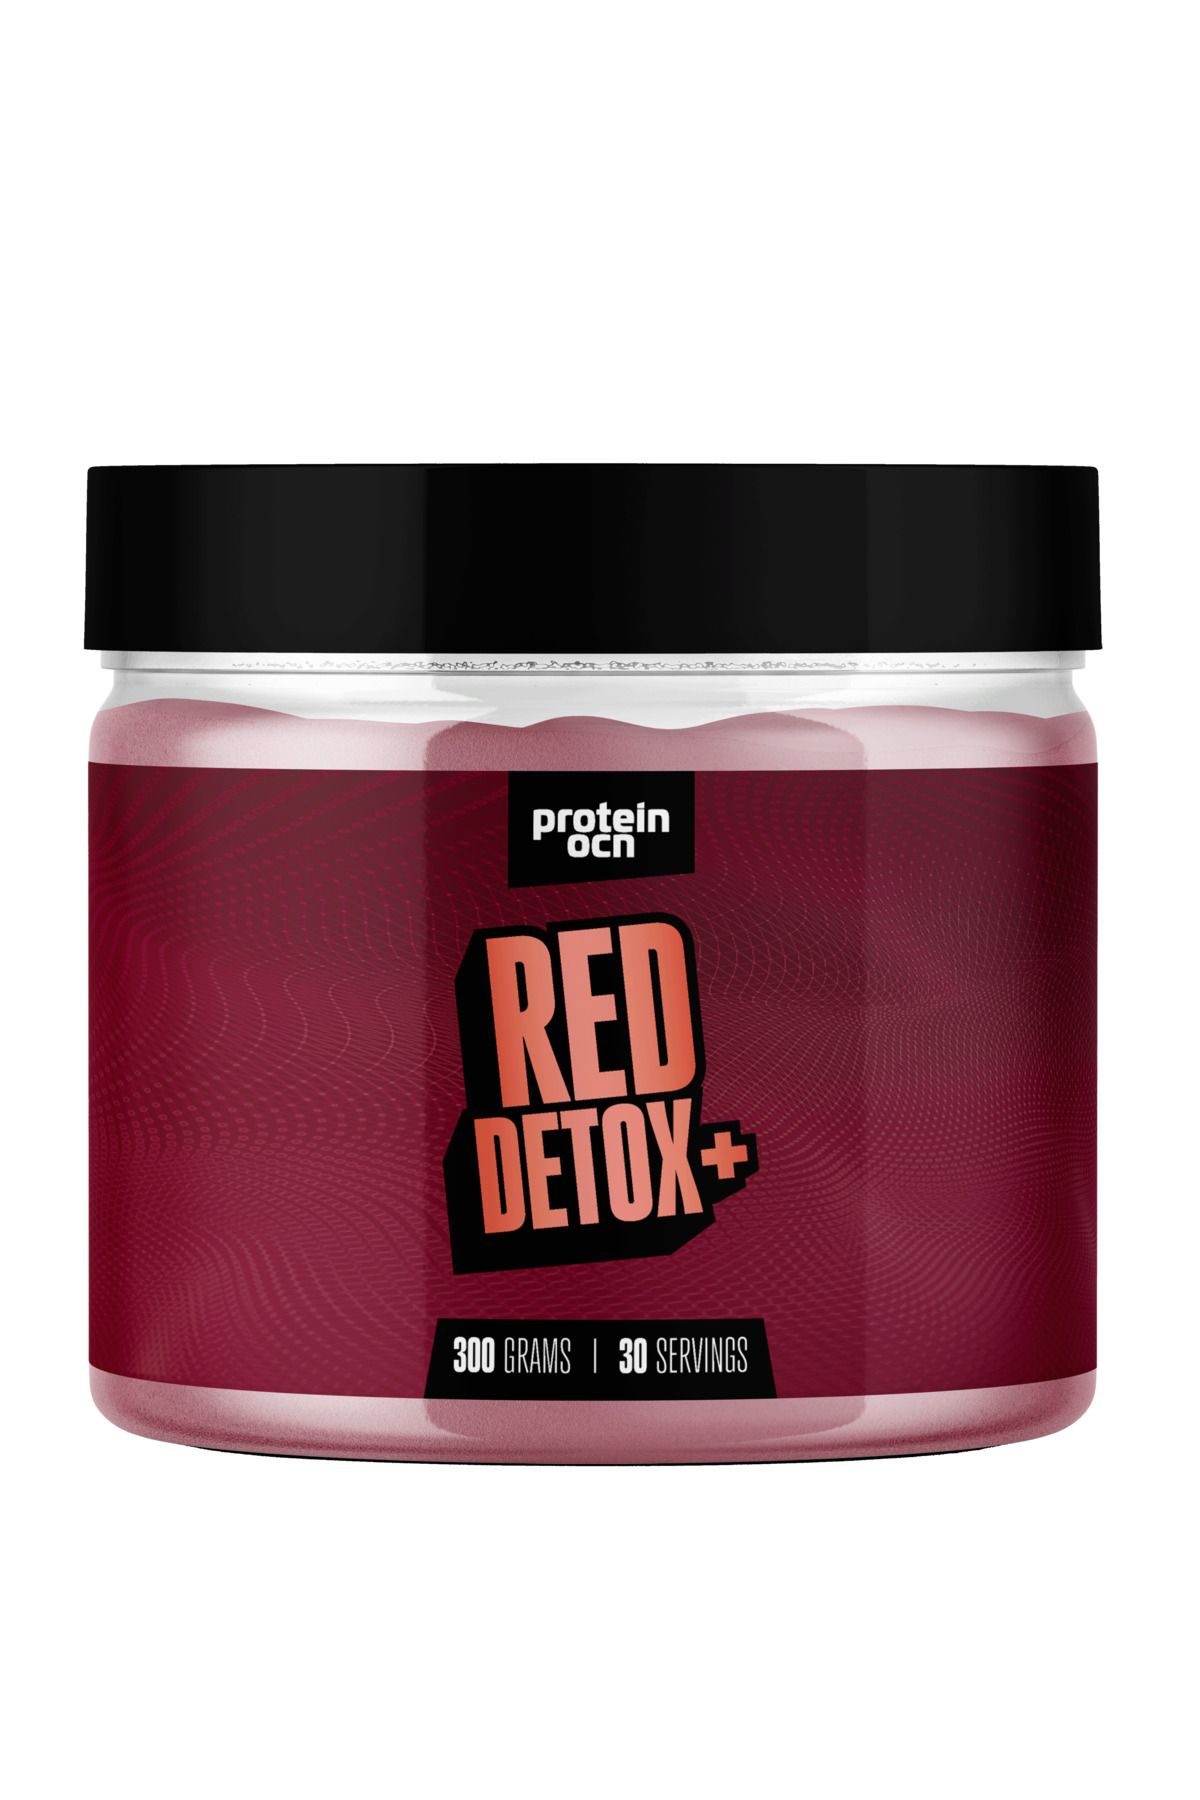 Proteinocean Red Detox+™ 300g - 30 Servis